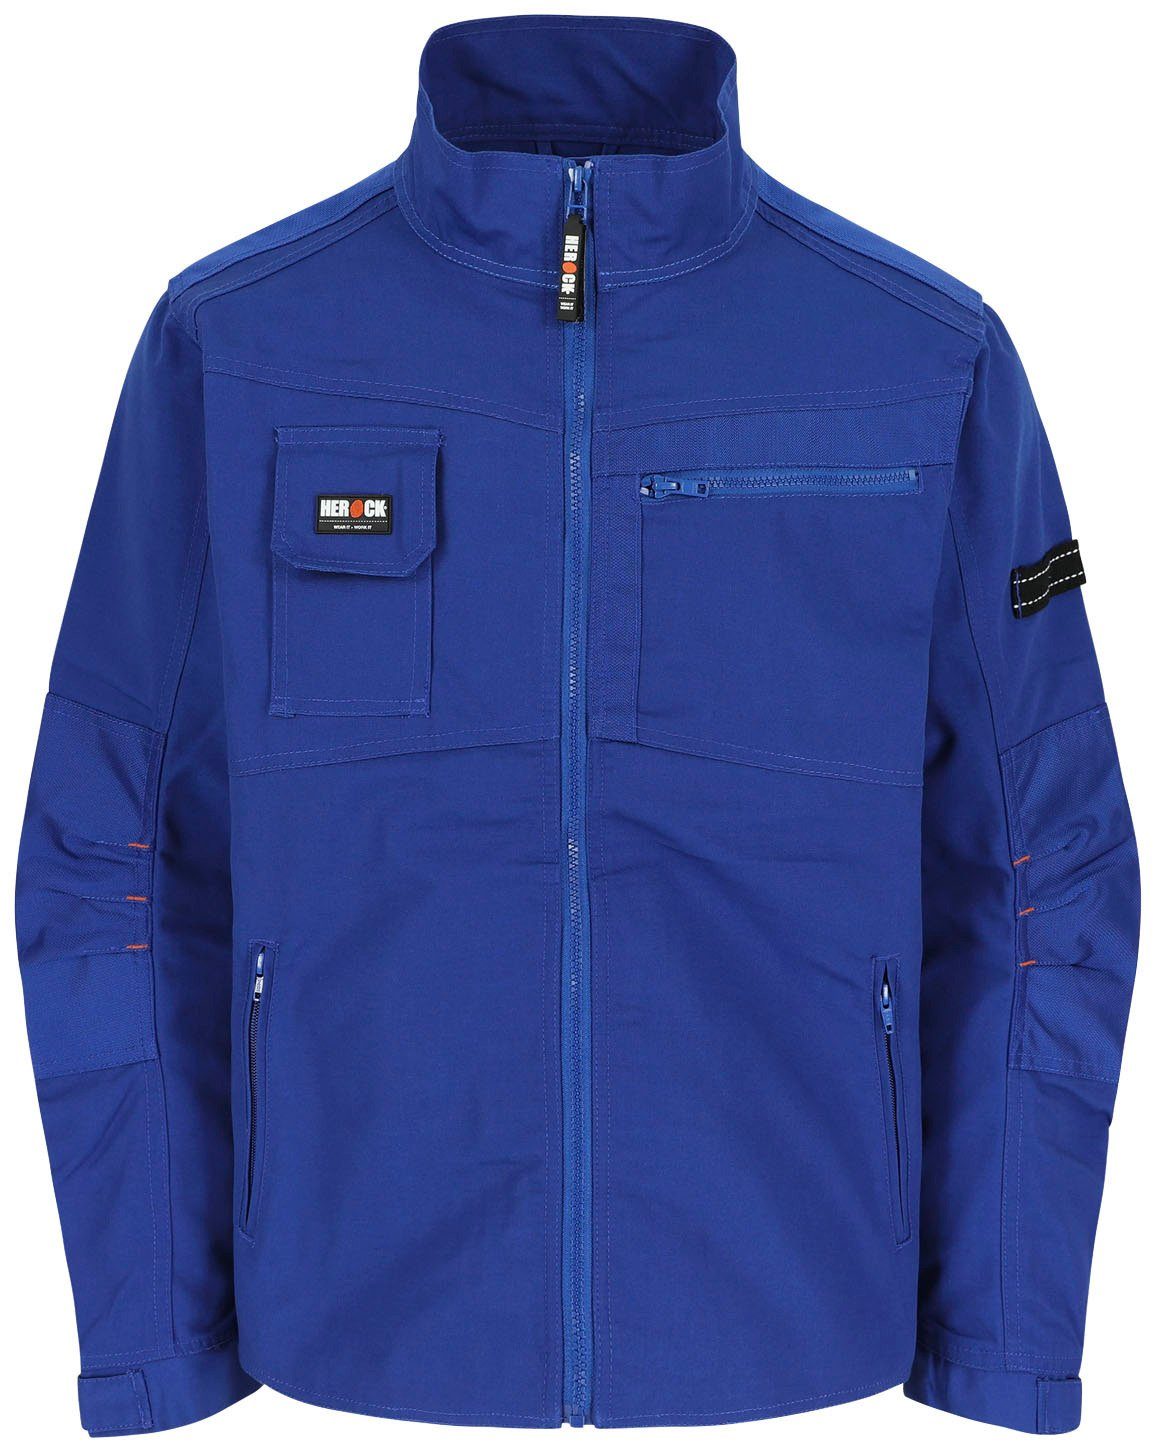 Taschen Anzar - Arbeitsjacke - Jacke Wasserabweisend robust verstellbare Bündchen Herock - blau 7